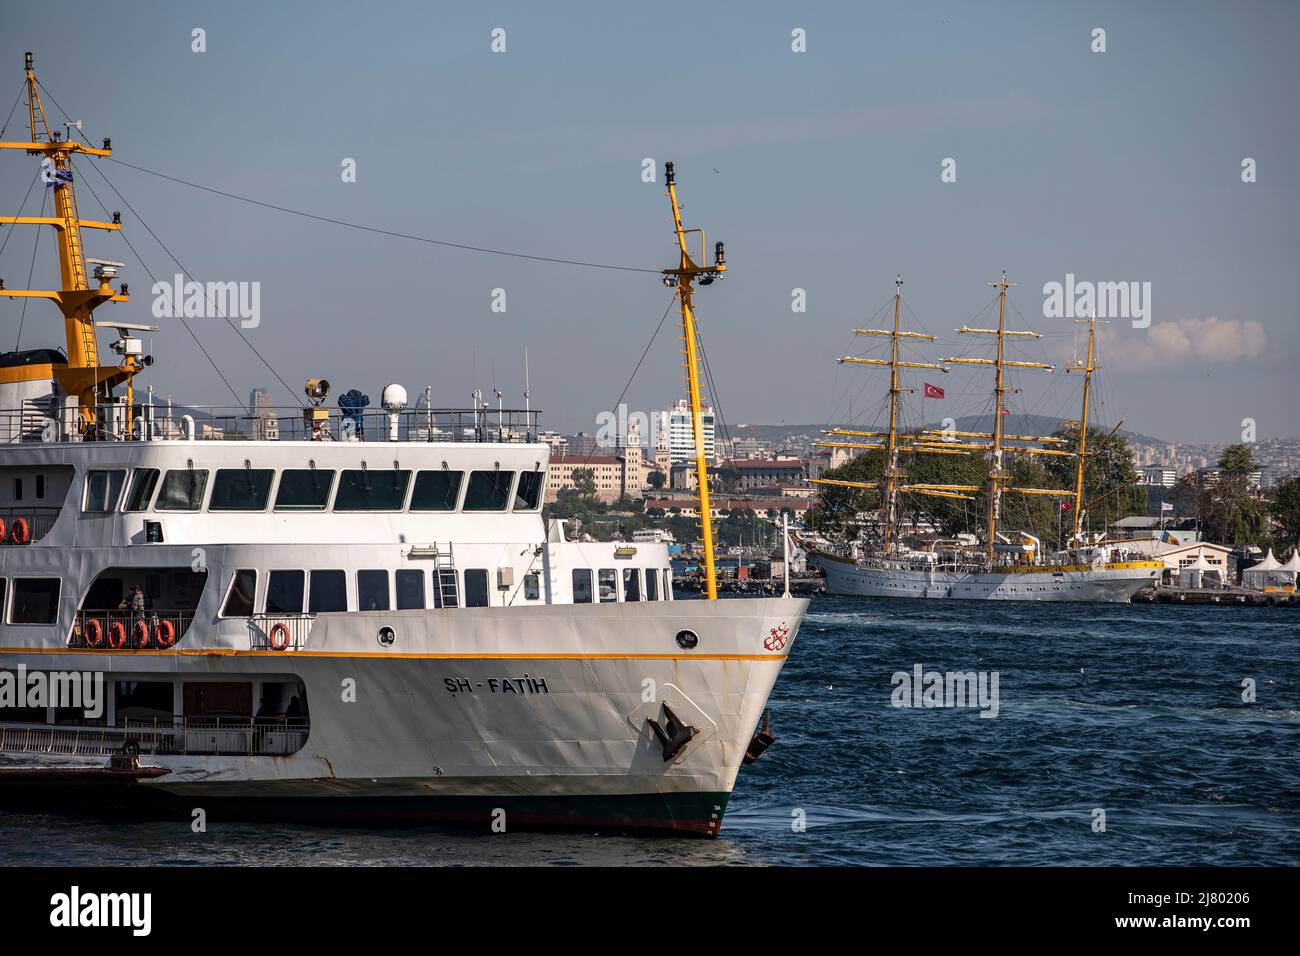 Les lignes de la ville ferry vu à l'embarcadère de Karakoy avec le bateau militaire Nava Scoala Mircea en arrière-plan. Le navire d'entraînement militaire de la marine roumaine, vieux de 84 ans, traverse la mer de Marmara et est ancré à Sarayburu. Banque D'Images